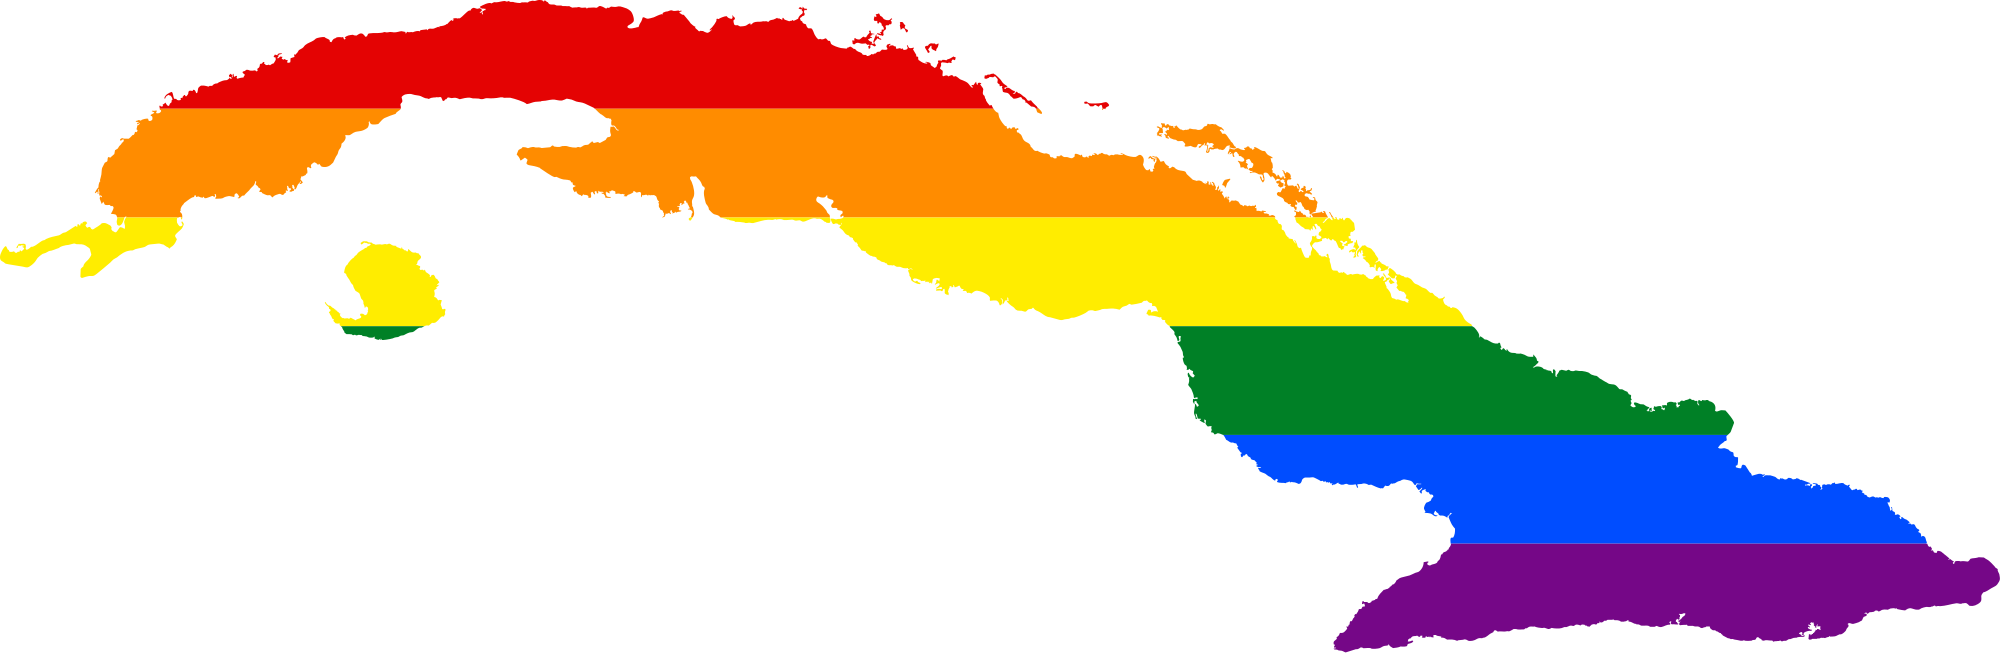 Open - Socialist Republic Of Cuba (2000x653)